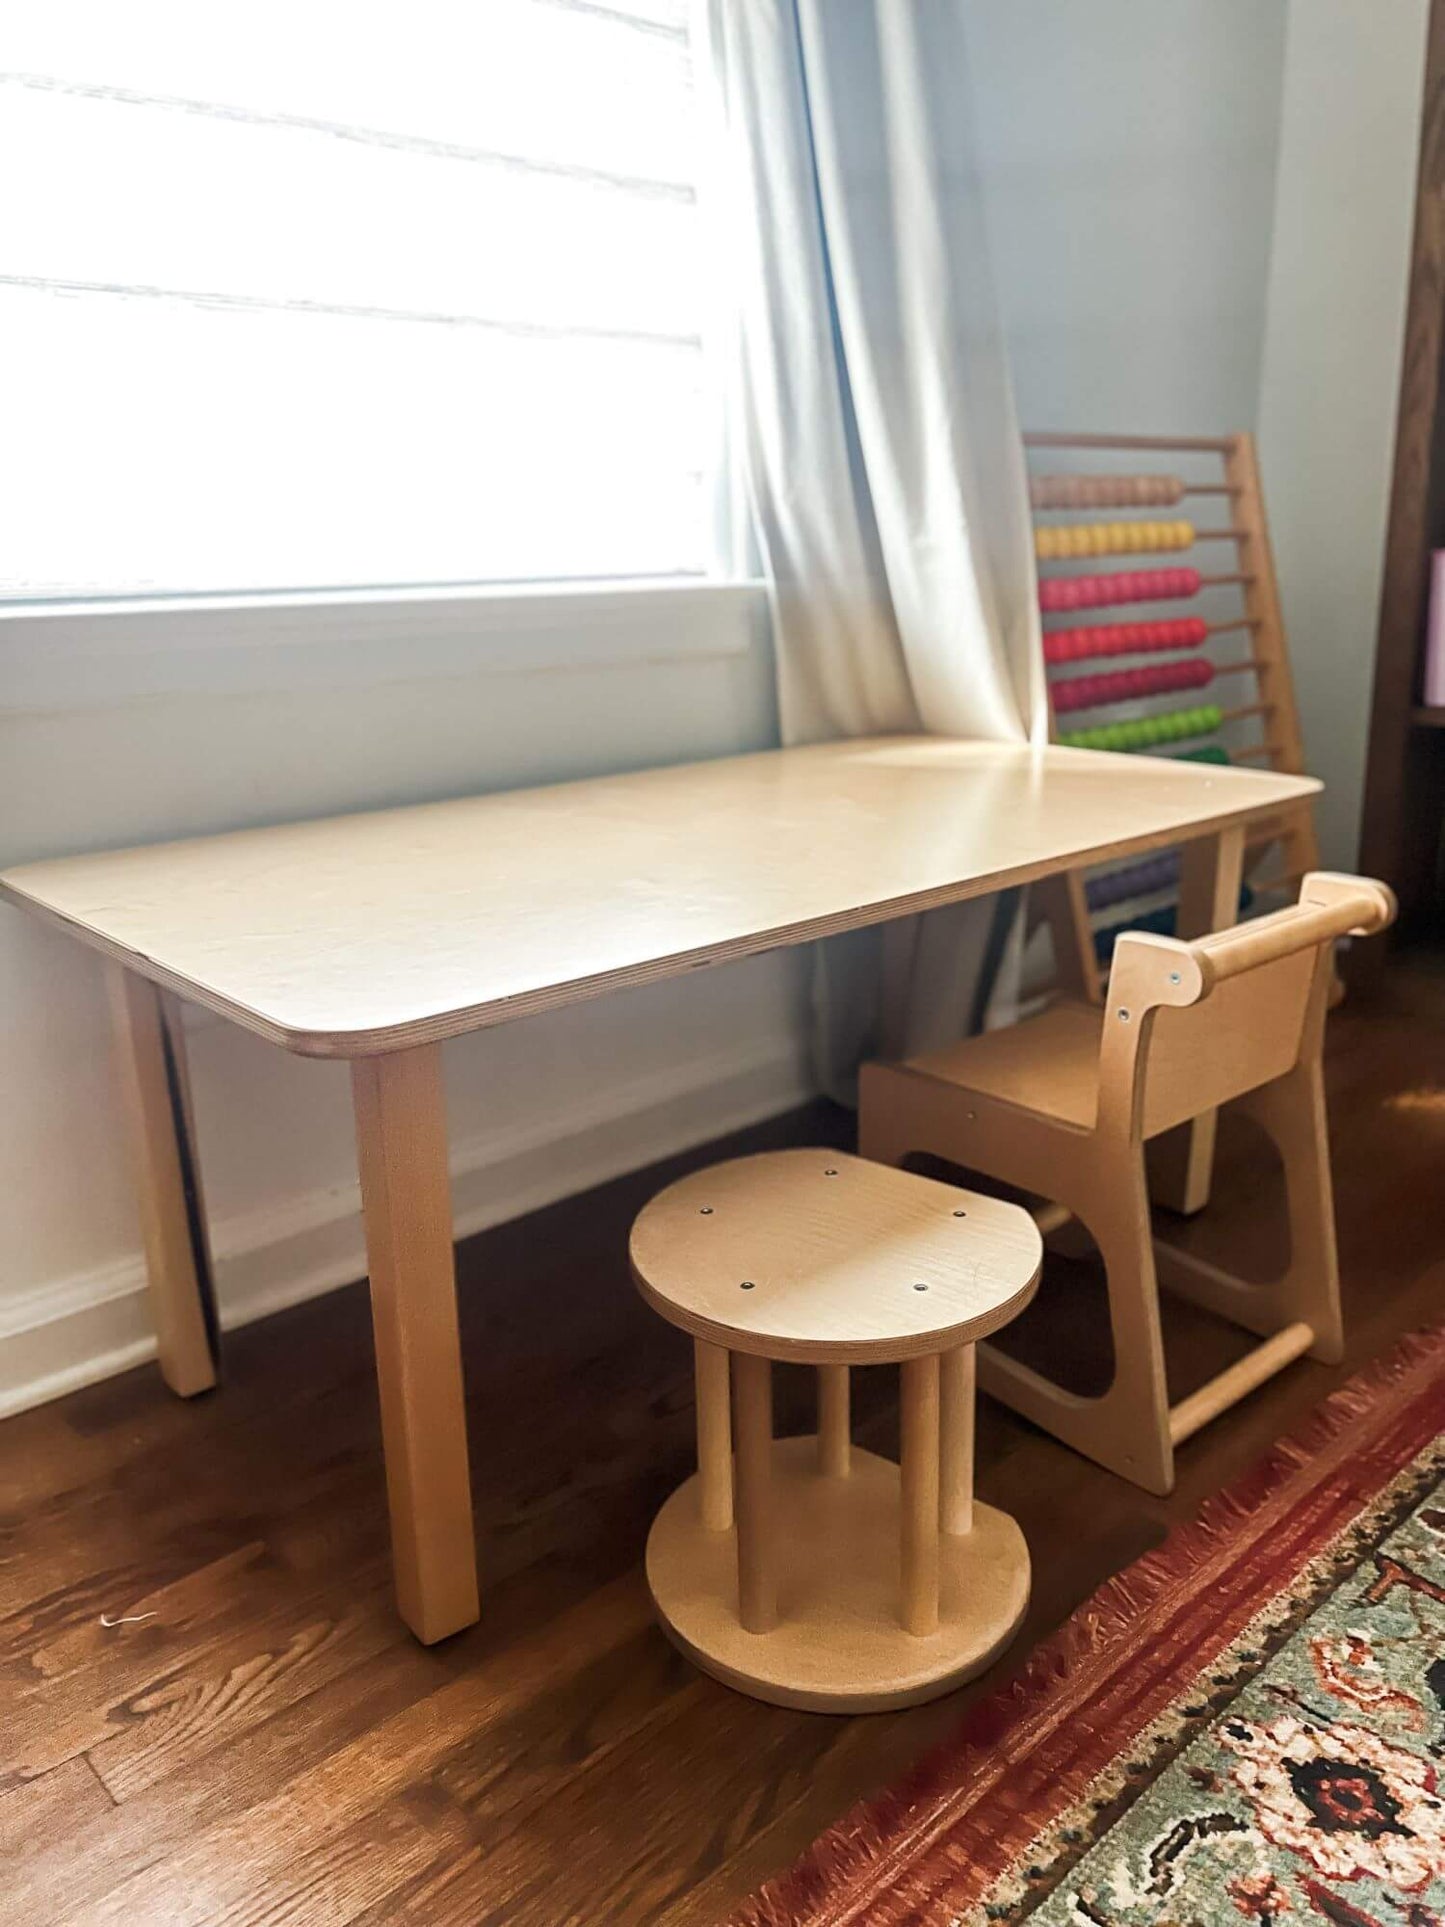 montessori furniture. montessori table and chairs.